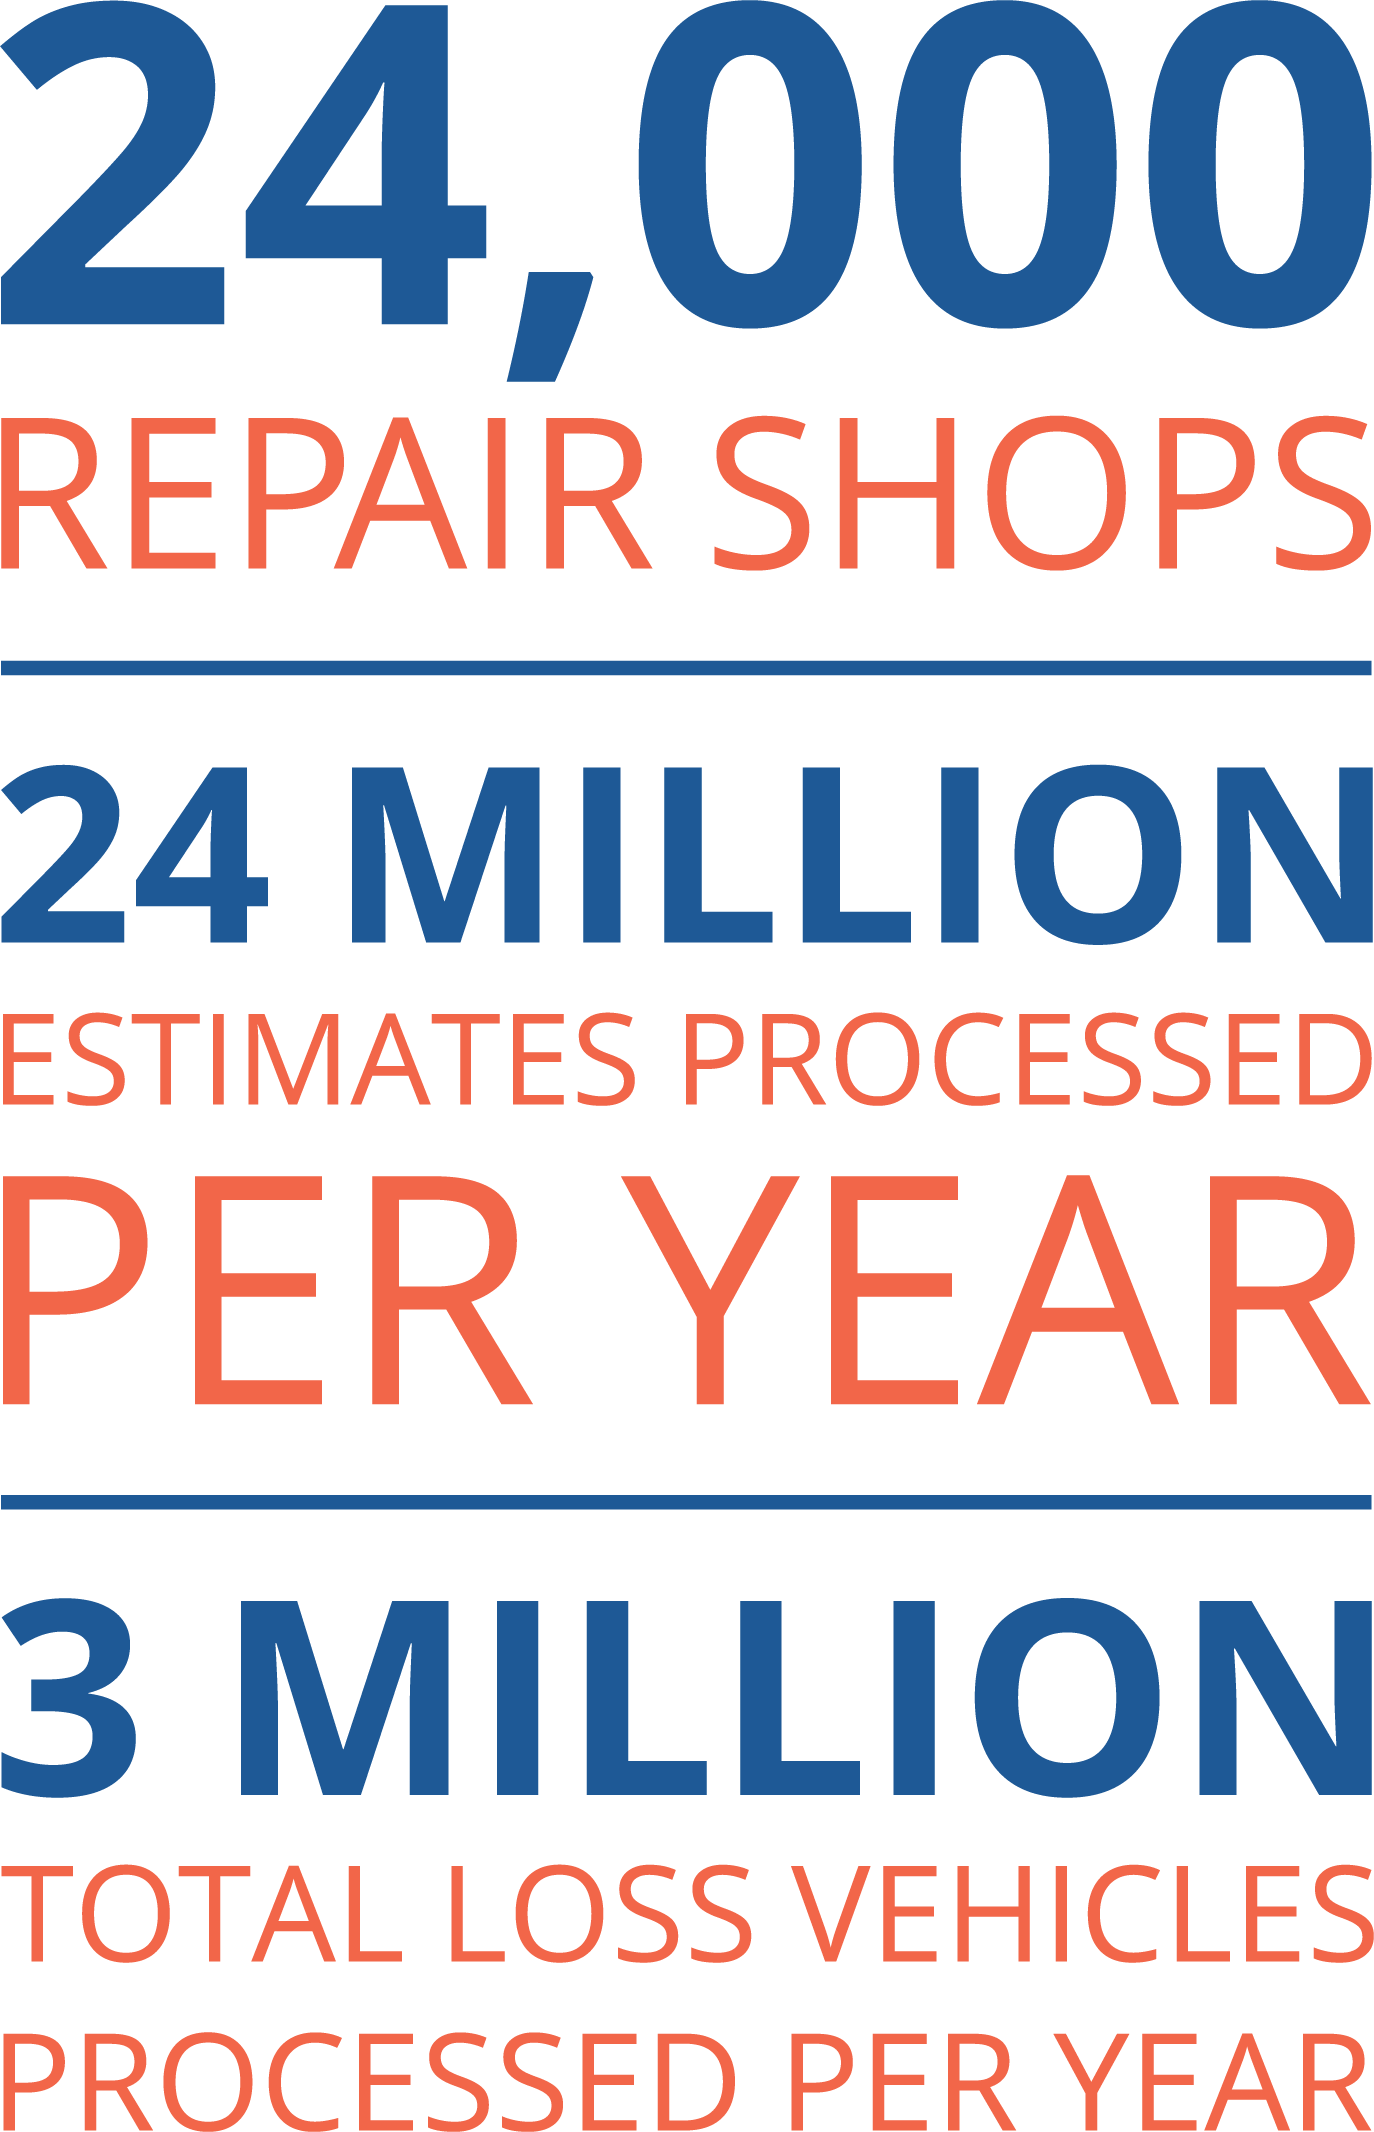 24,000 repair shops - 24 million estimates processed per year - 3 million total loss vehicles processed per year